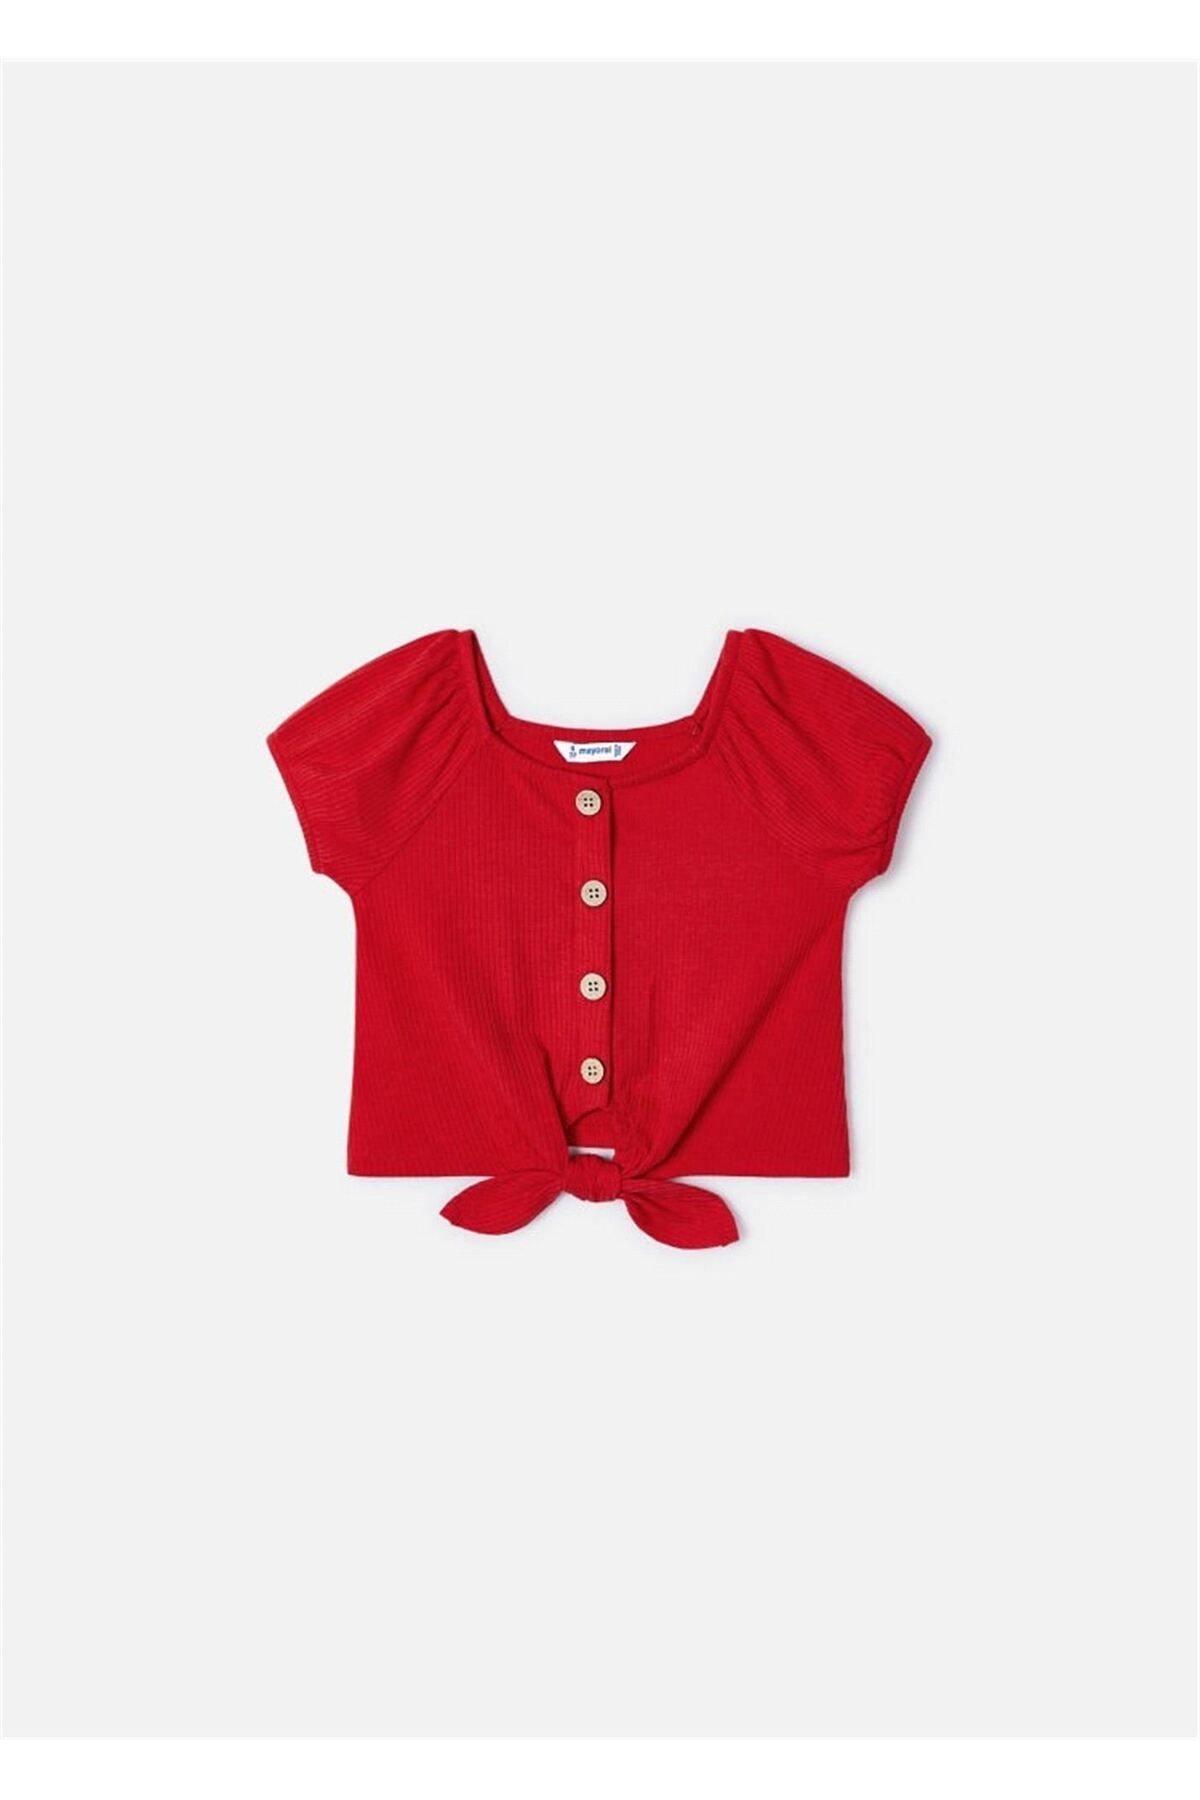 Mayoral Kız Çocuk Nervürlü Tişört Kırmızı 3086